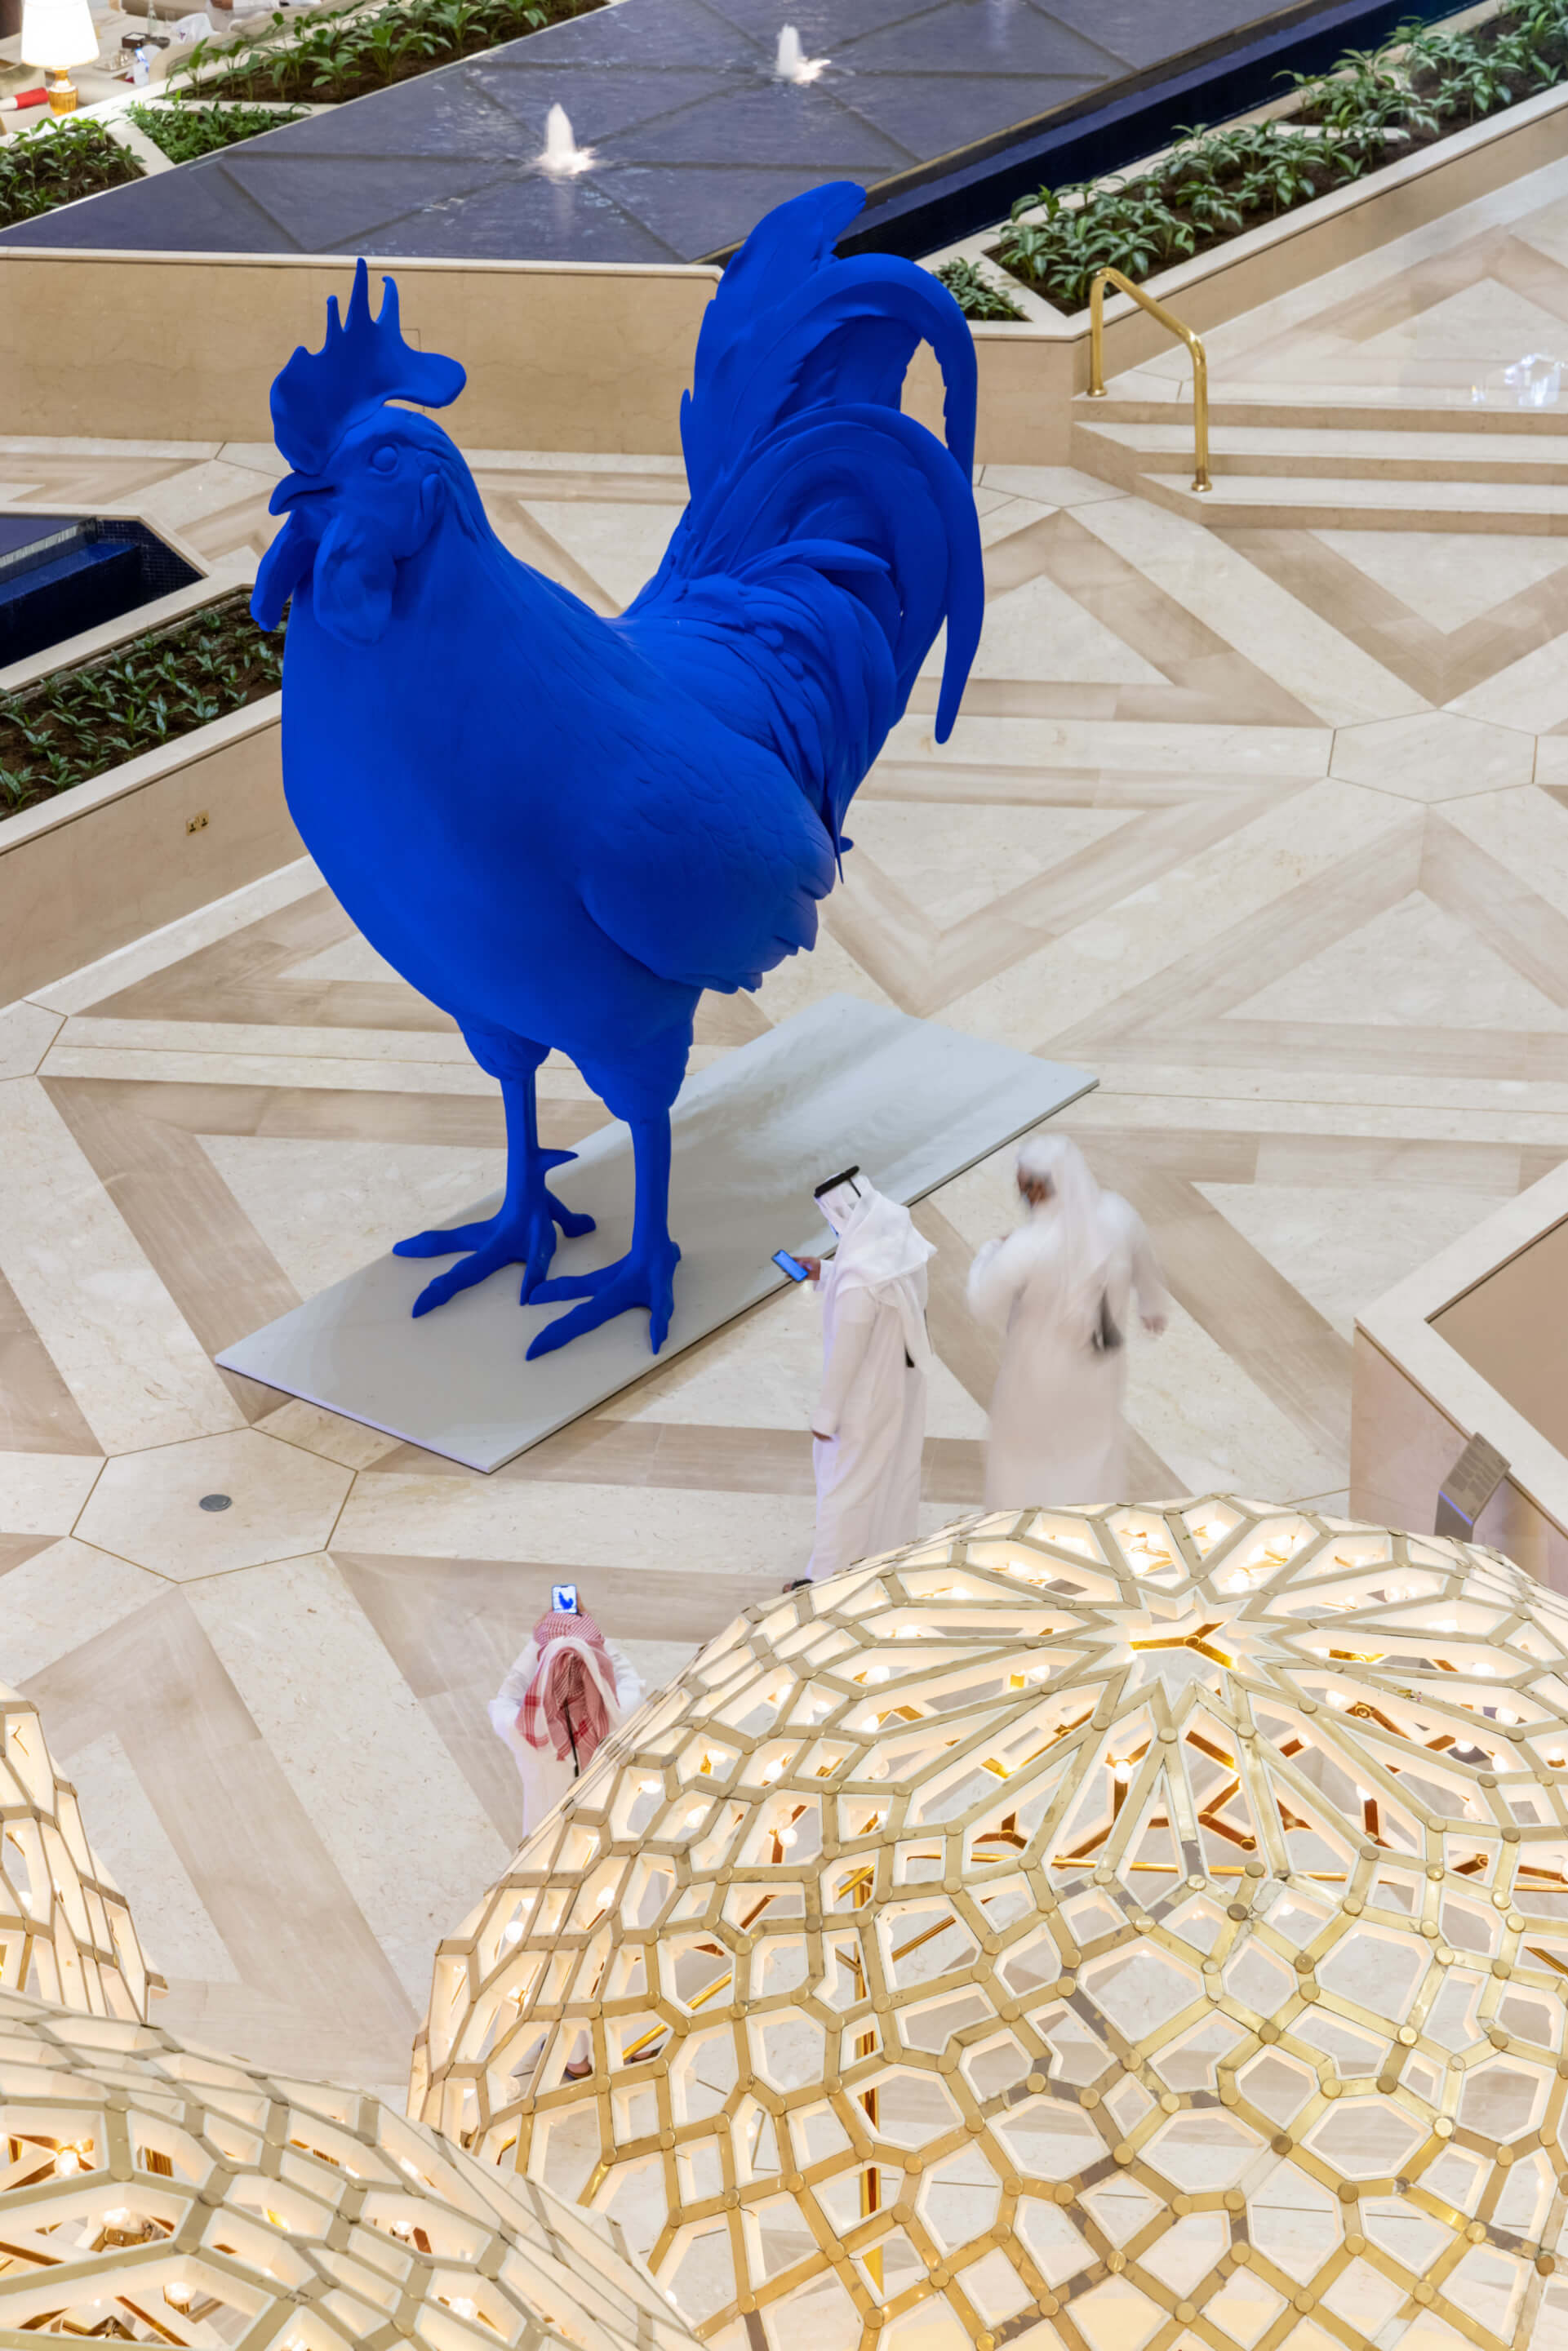 a giant blue chicken sculpture